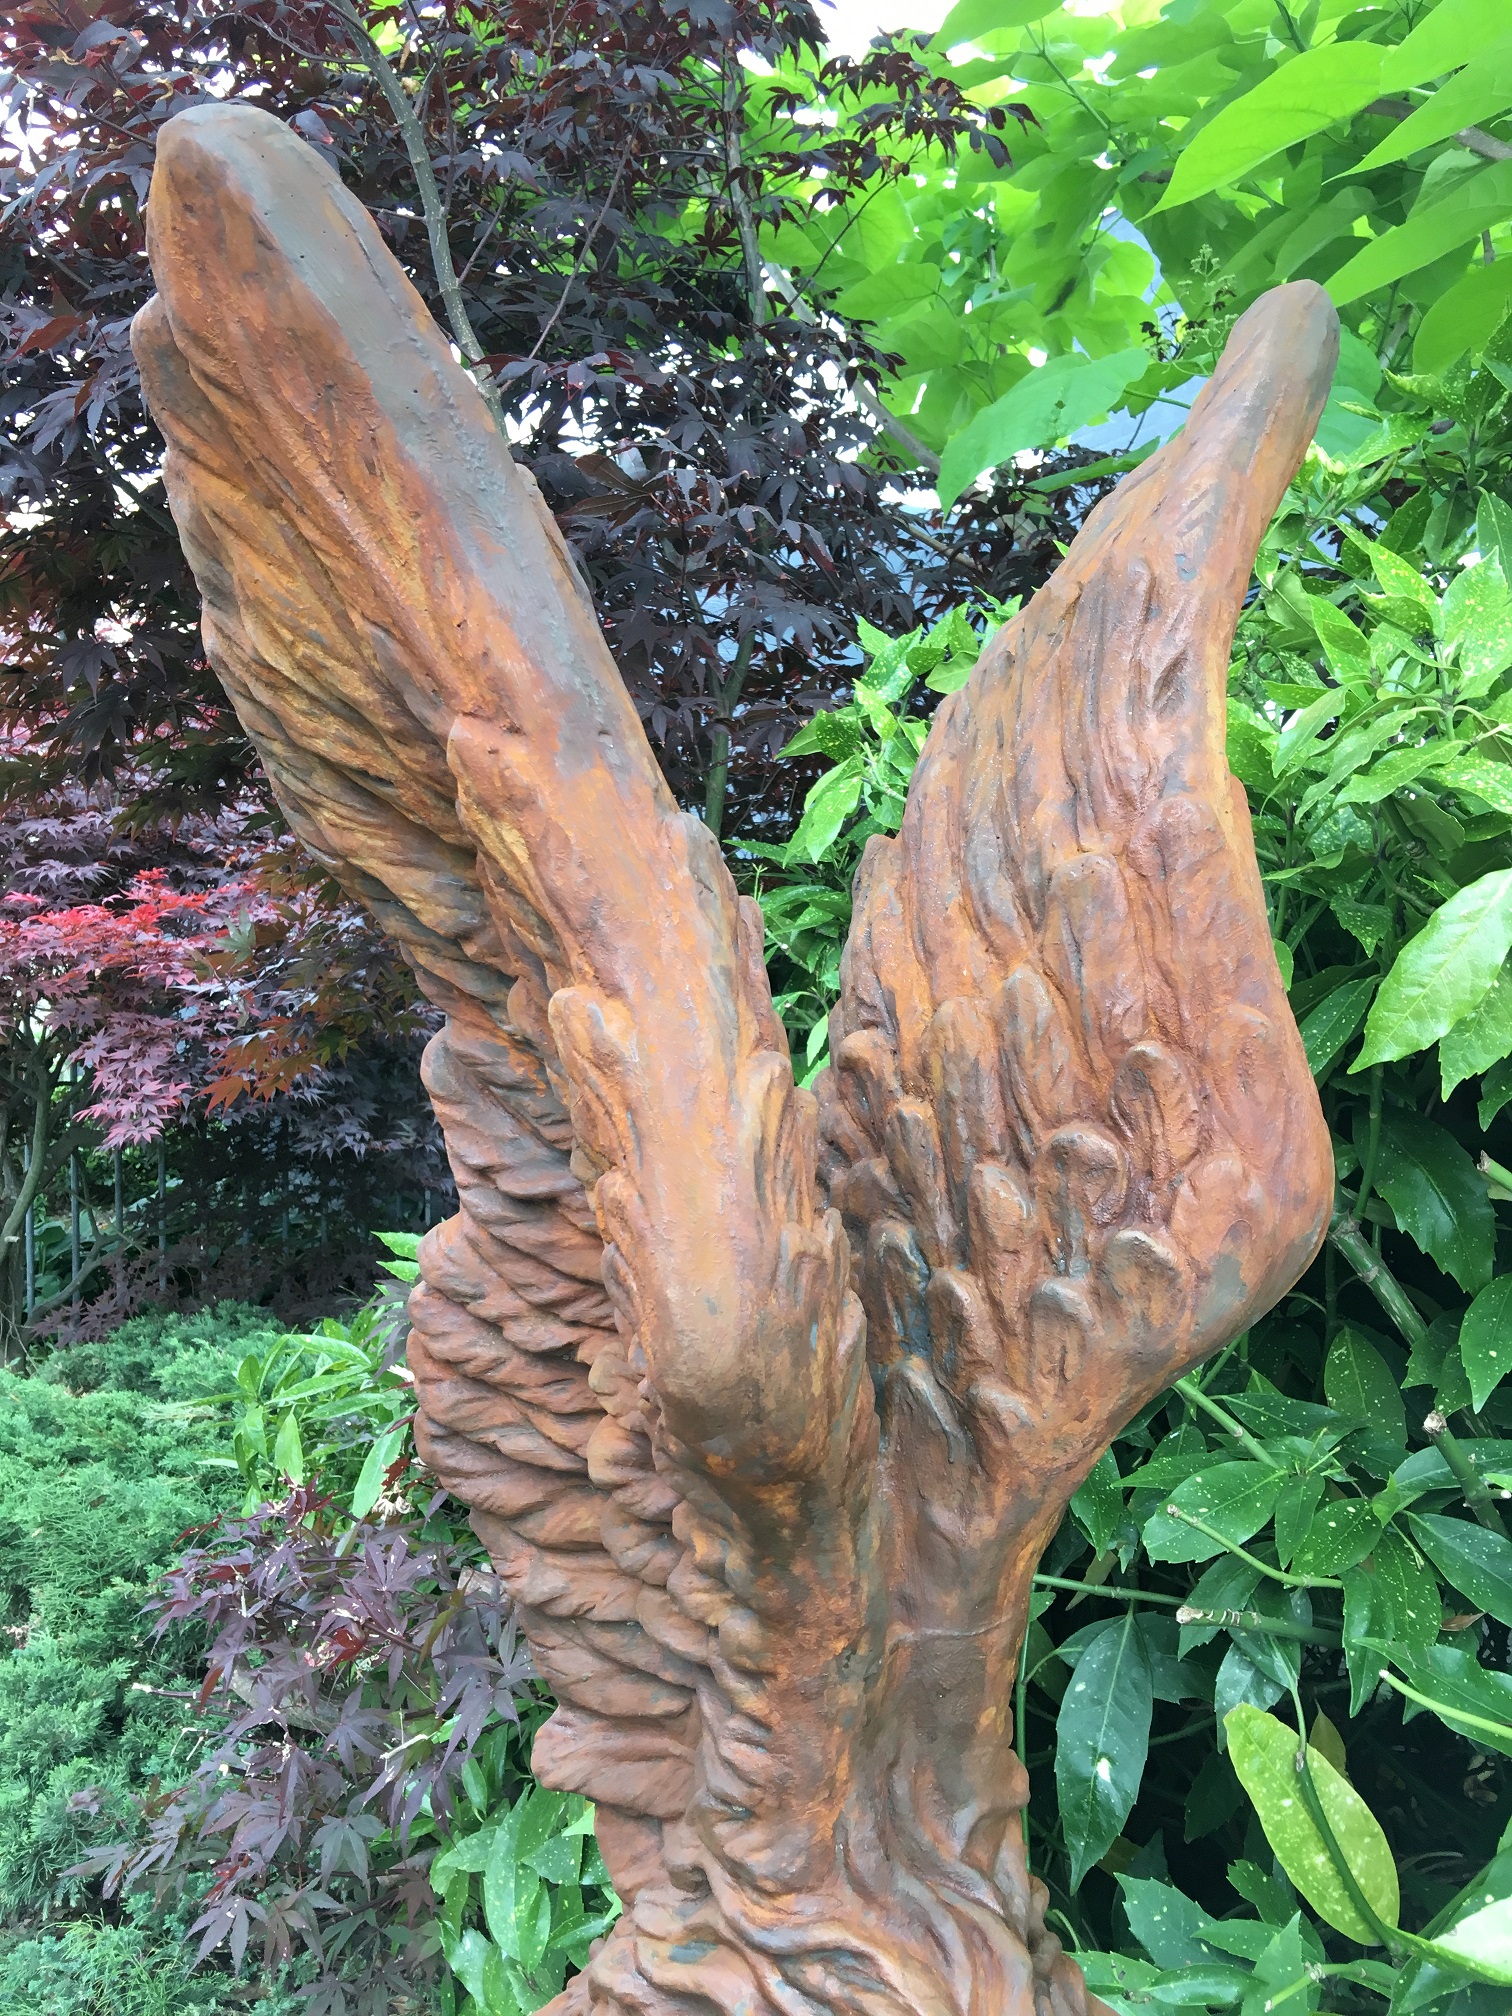 Zeer forse knielende oxide Engel met vleugels omhoog, mooi stenen beeld !